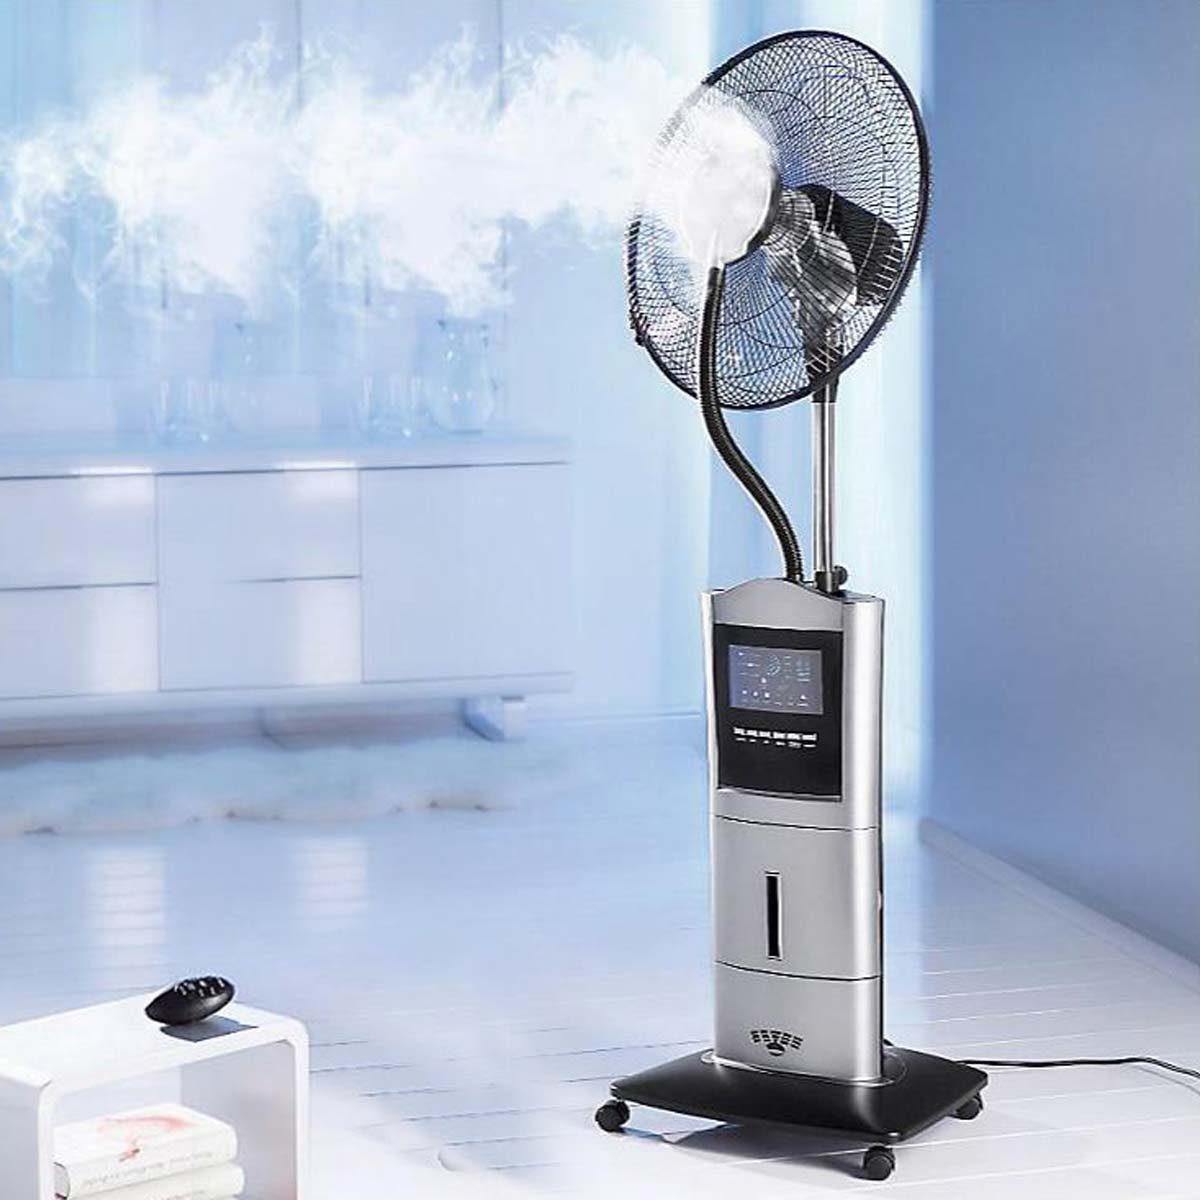 BRAST Standventilator Ventilator mit Sprühnebel Anti-Mücken Funktion Luftbefeuchter